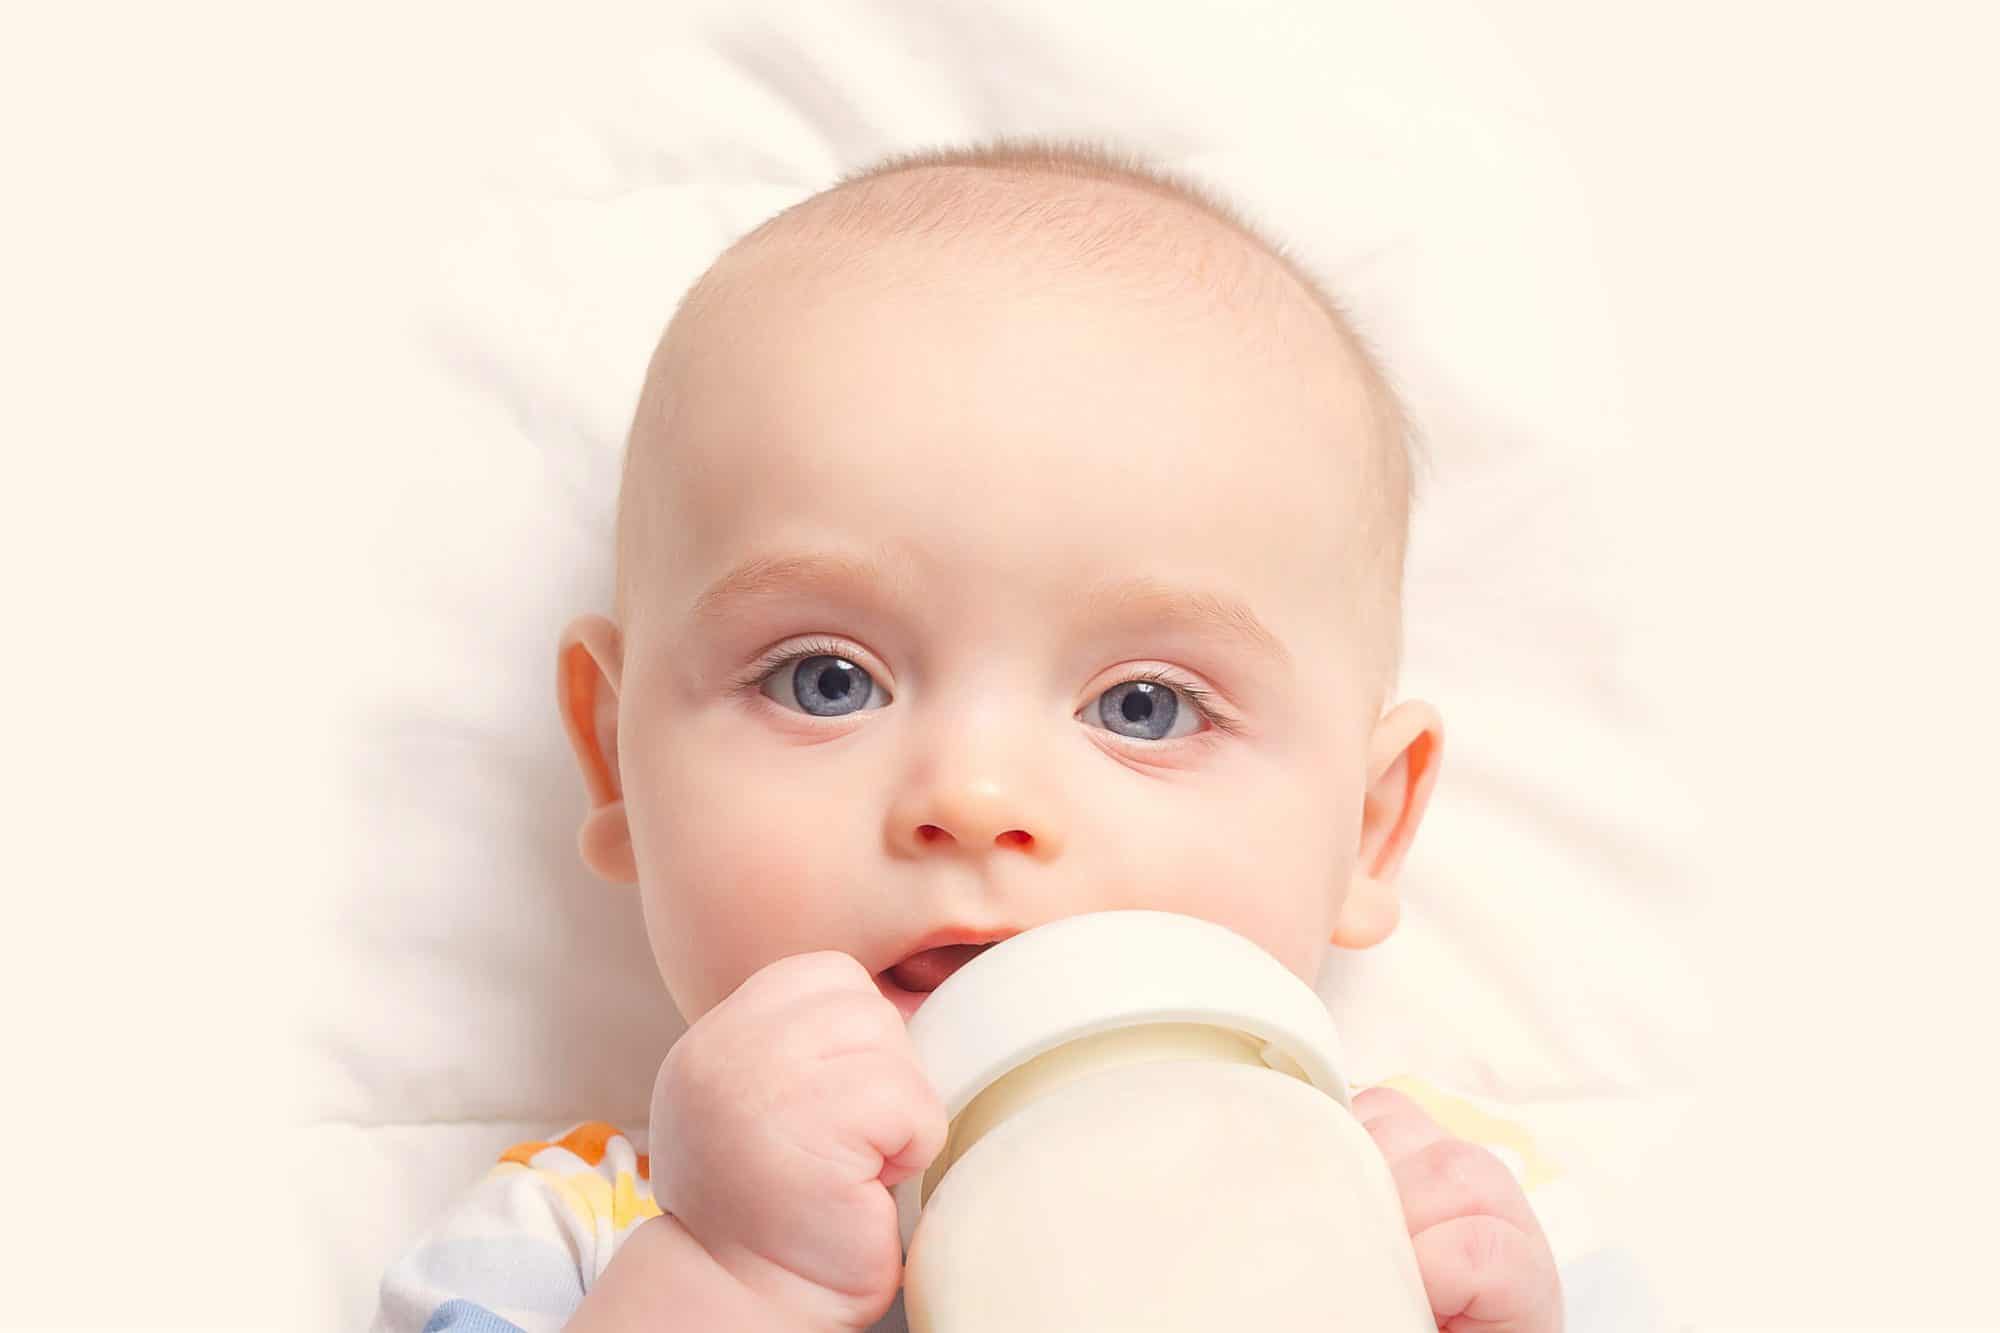 Las fotos de recién nacidos tomando biberón, ¿son adecuadas?